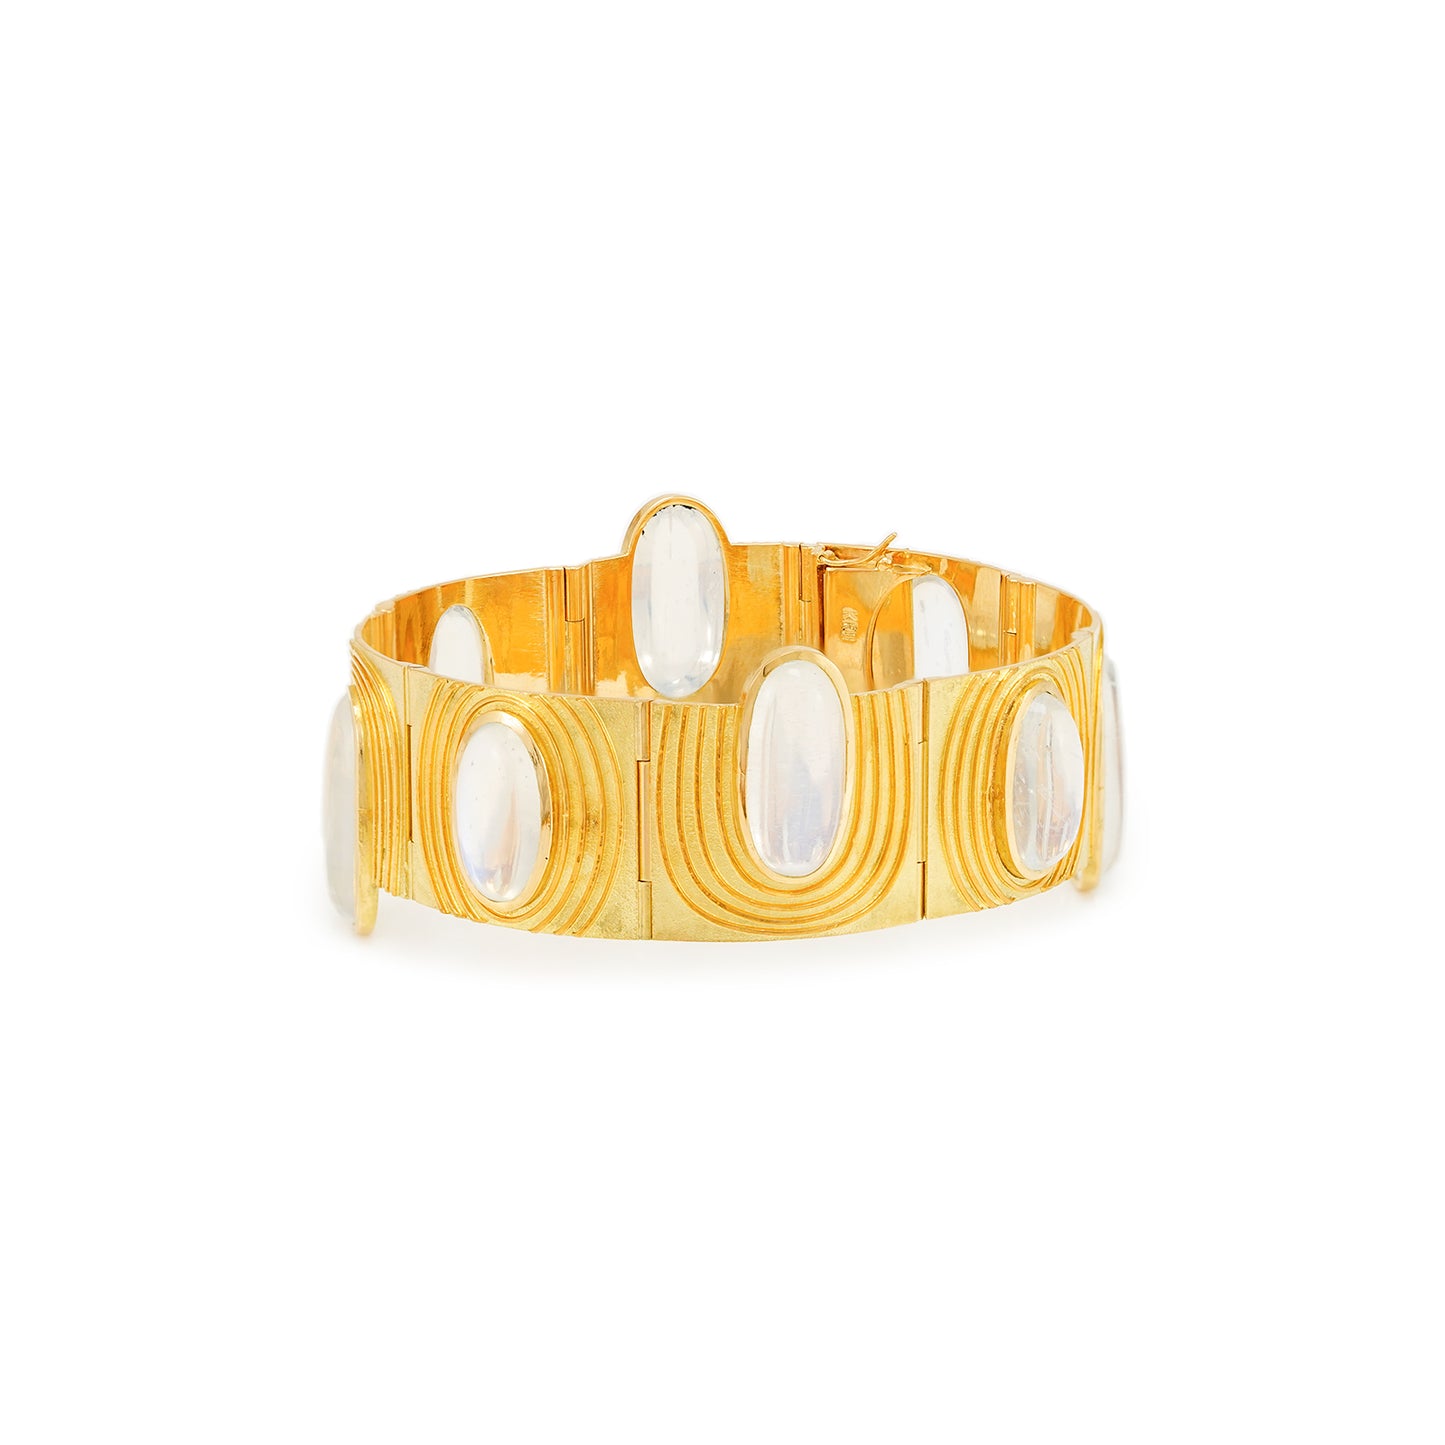 Vintage Edelstein Armband Mondstein Gelbgold 18K Damenschmuck Goldarmband bracelet